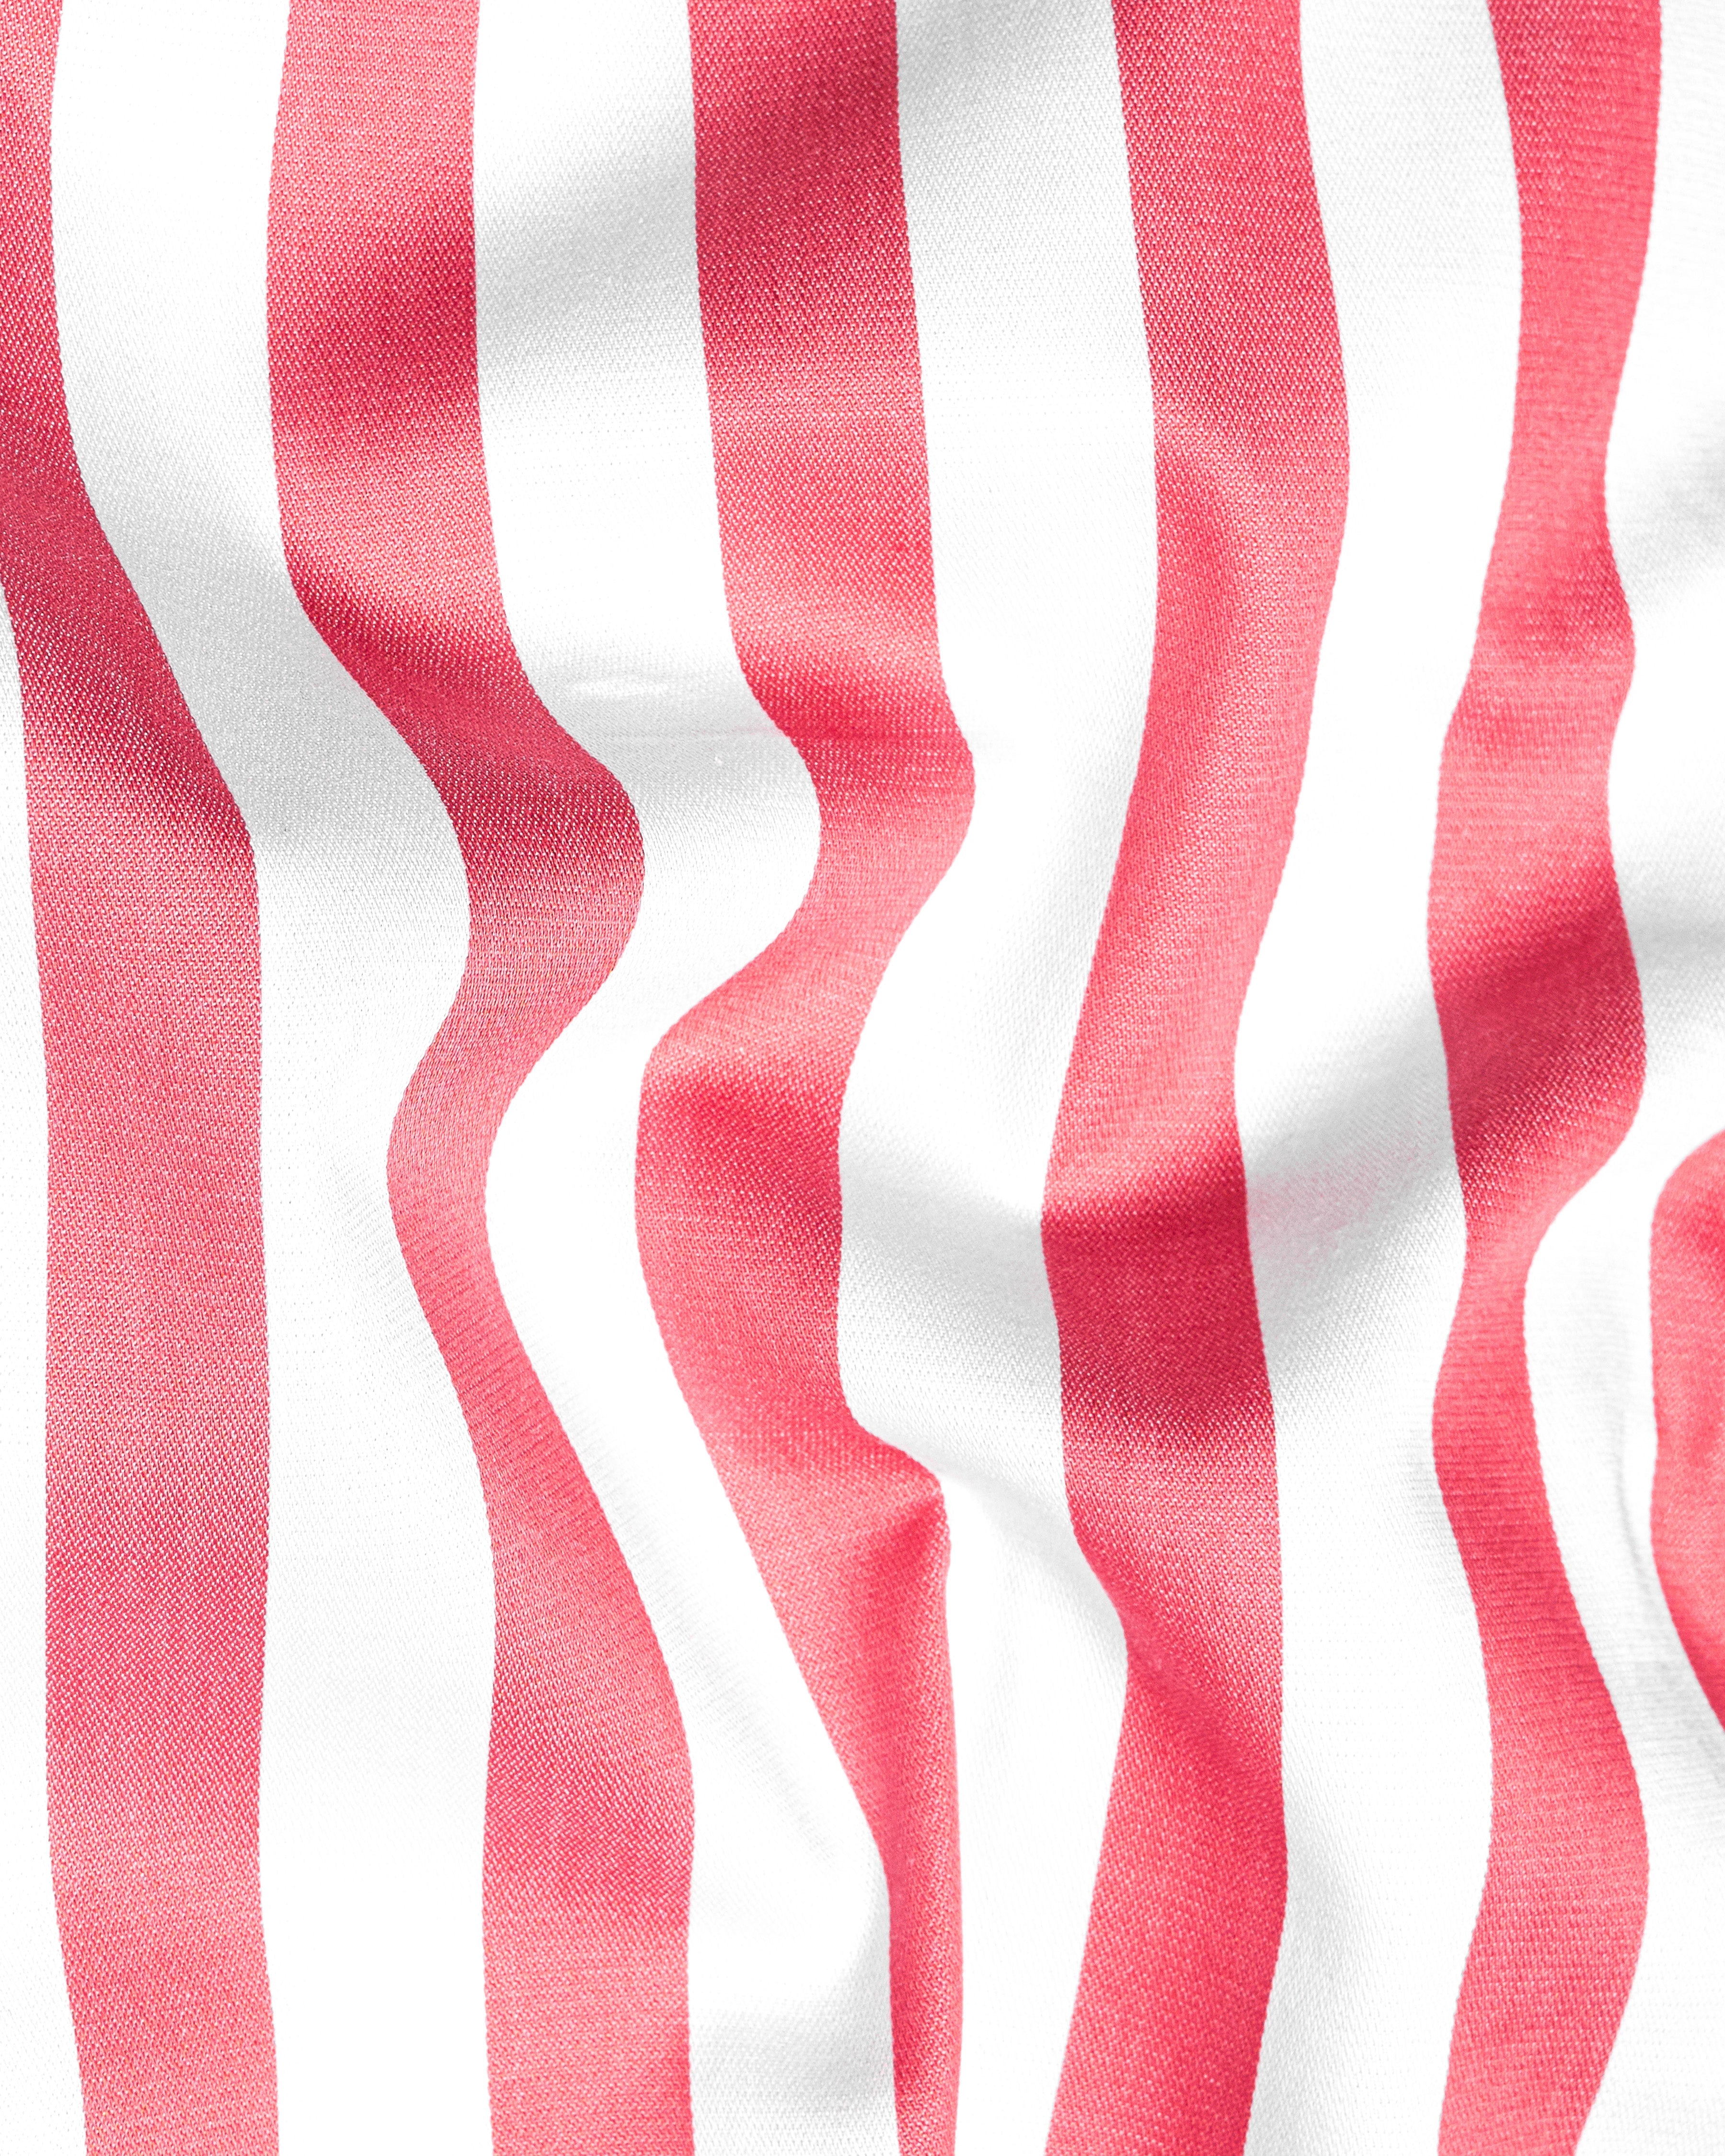 Geraldine Pink and White Striped Twill Premium Cotton Shorts SR211-28, SR211-30, SR211-32, SR211-34, SR211-36, SR211-38, SR211-40, SR211-42, SR211-44